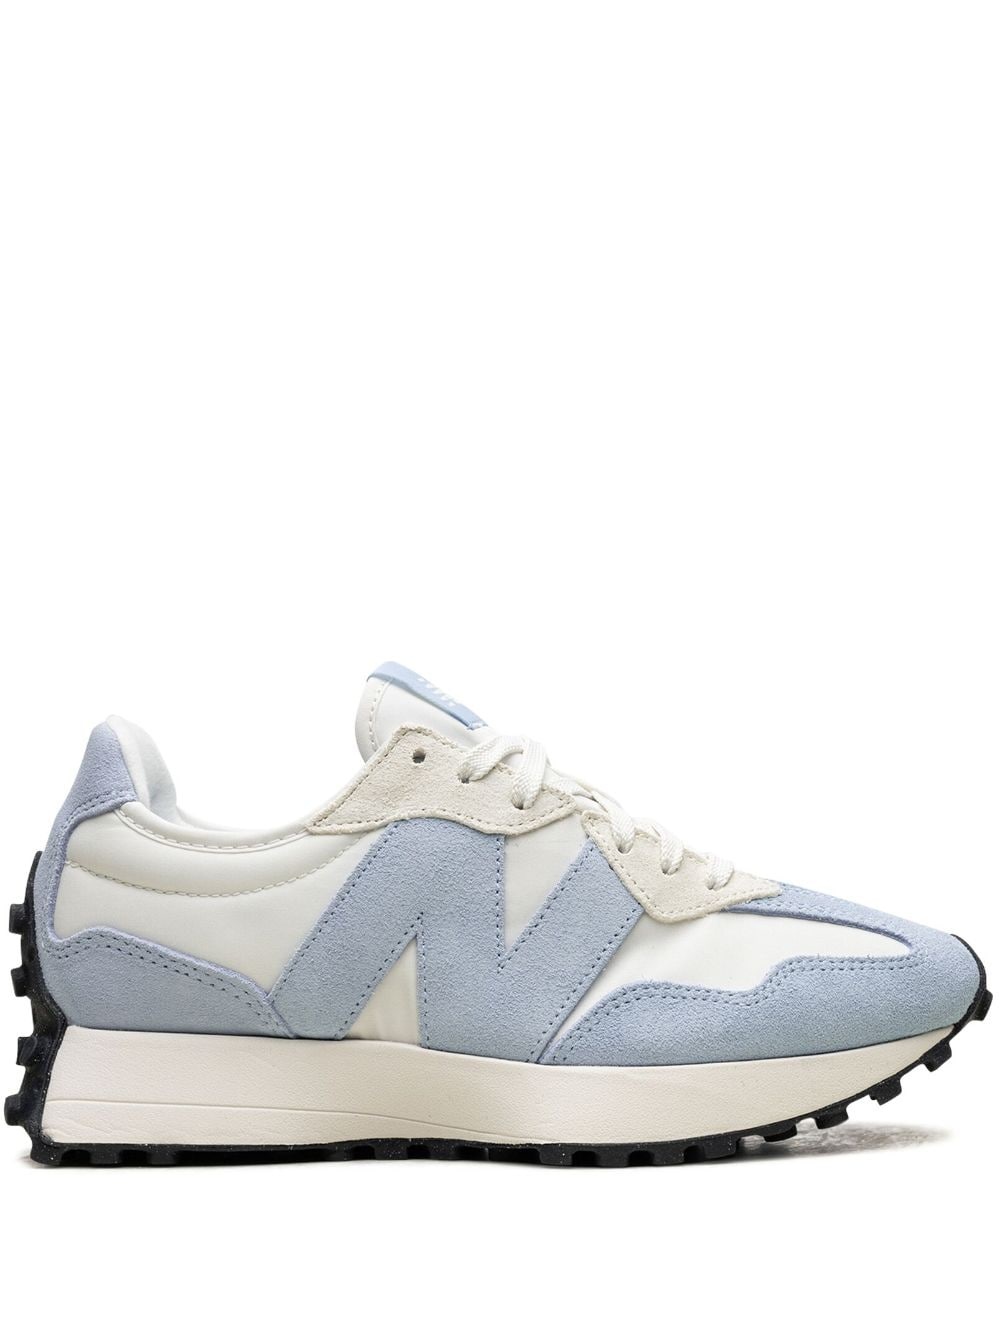 327 "White/Light Blue" sneakers - 1